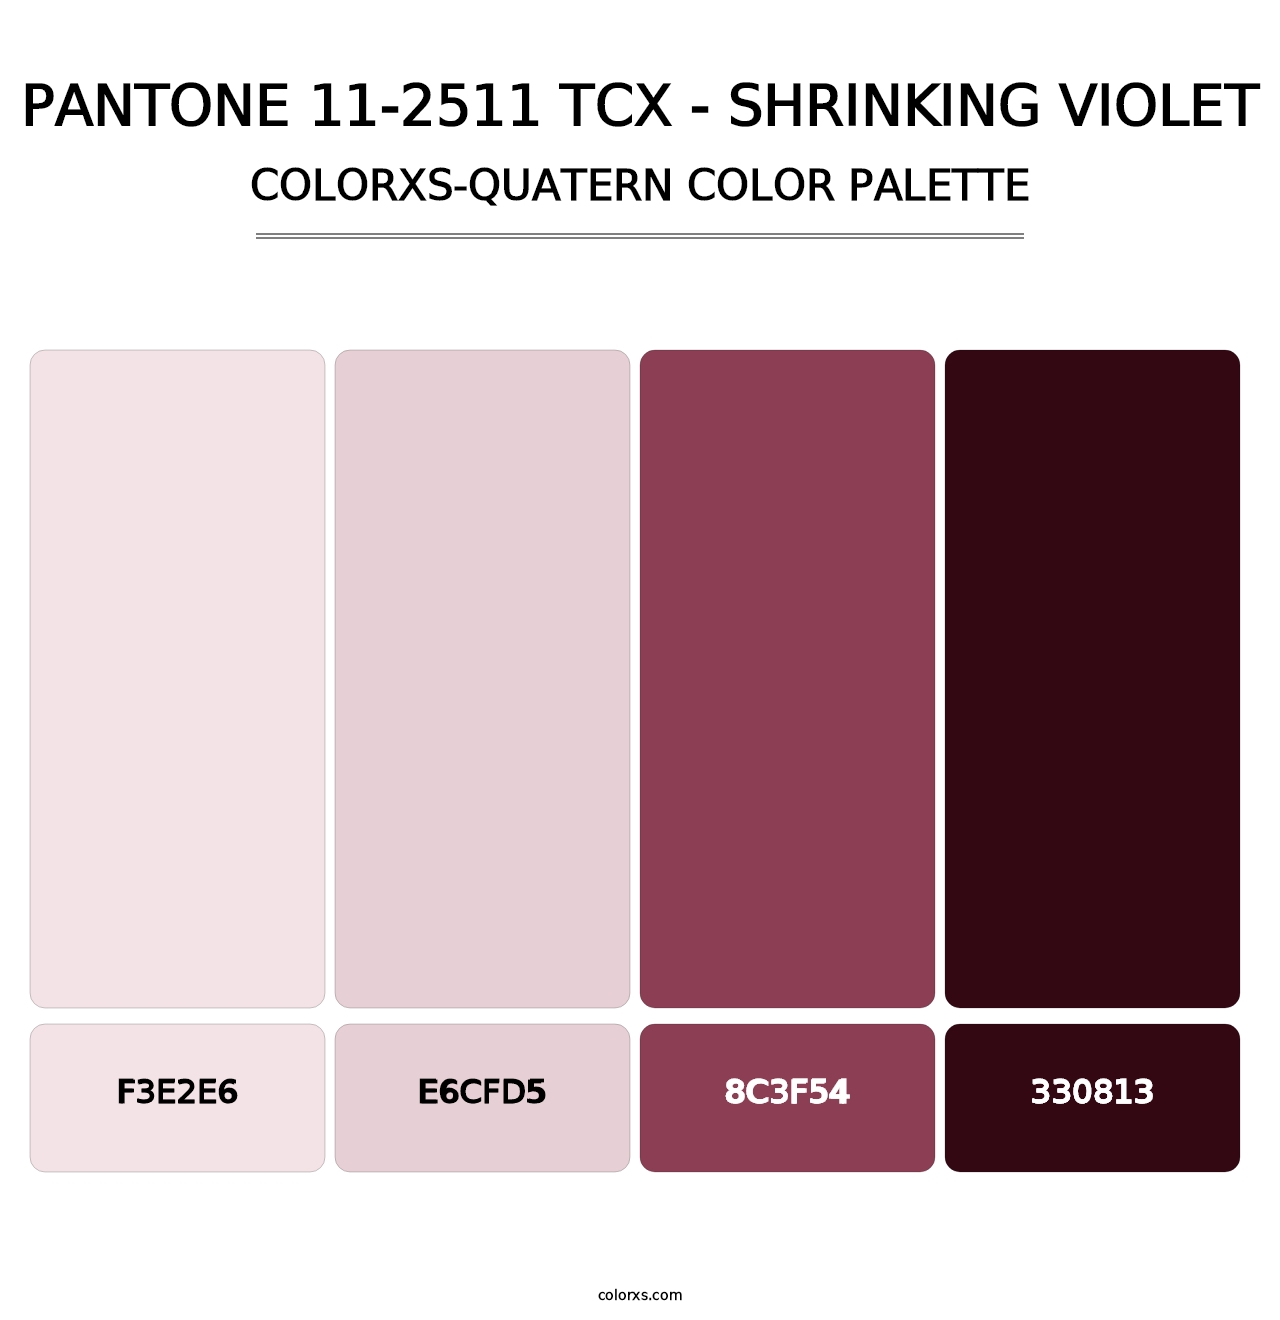 PANTONE 11-2511 TCX - Shrinking Violet - Colorxs Quatern Palette